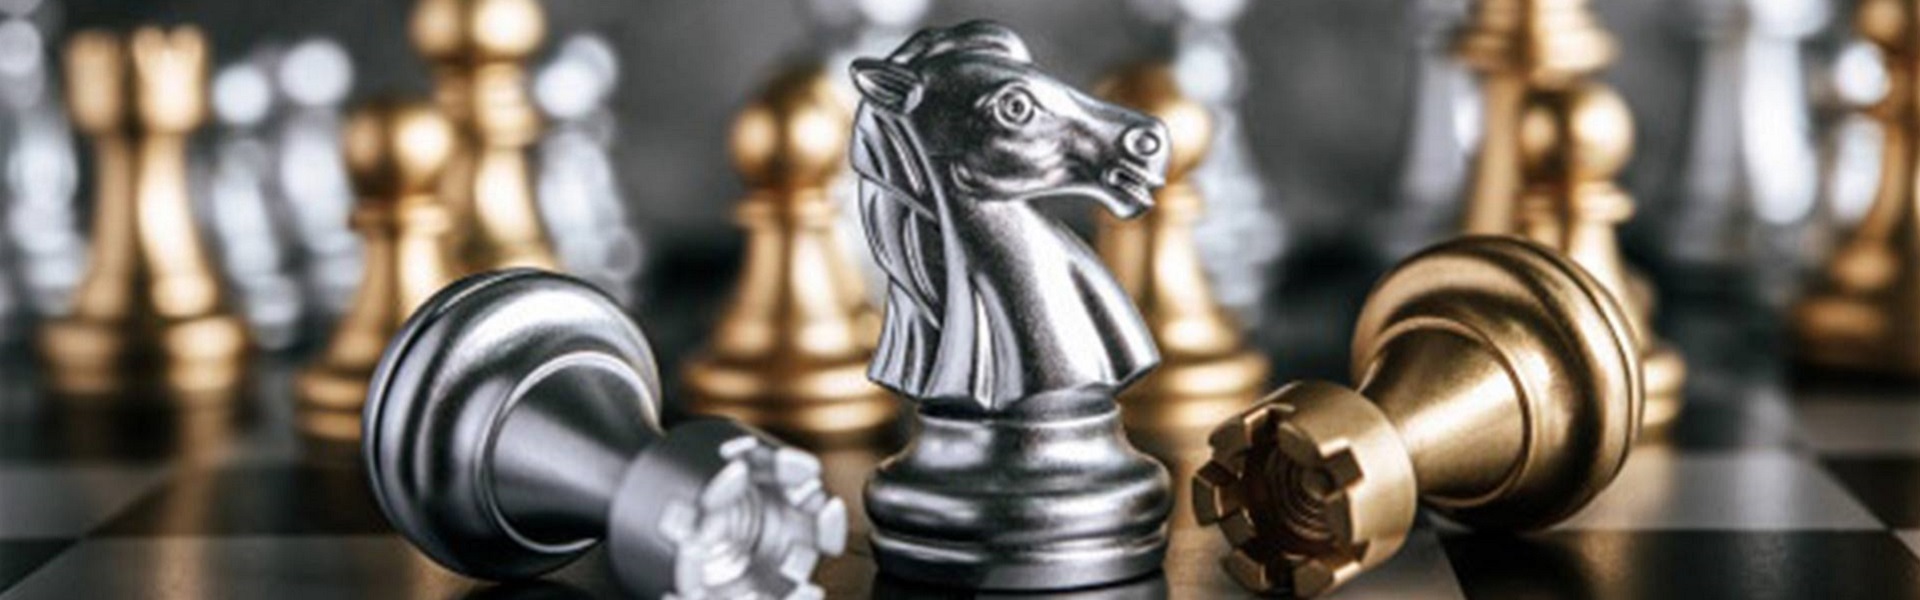 FIAT delovi |  Chess lessons Dubai & New York